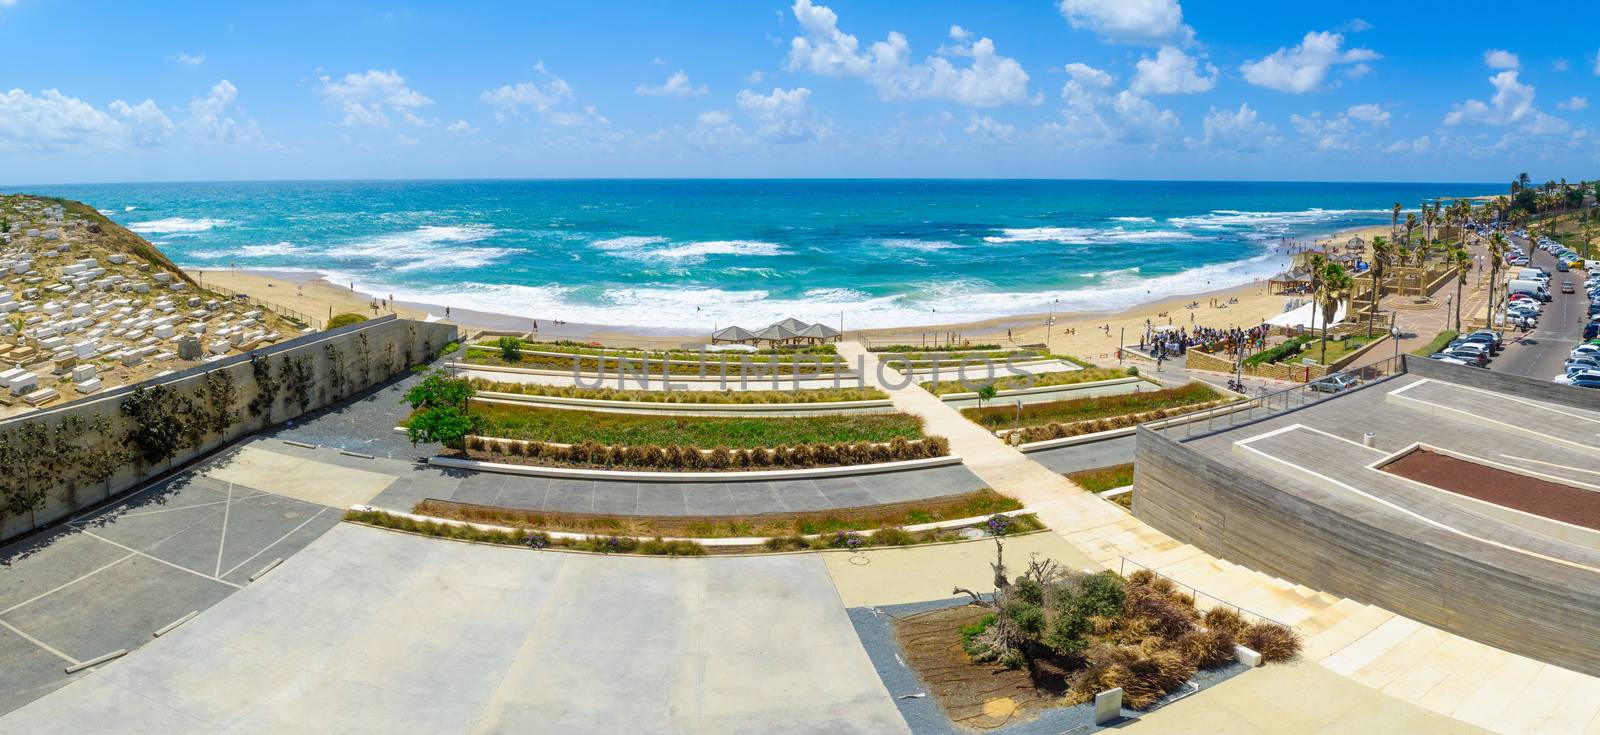 Givat Aliyah beach, Jaffa by RnDmS